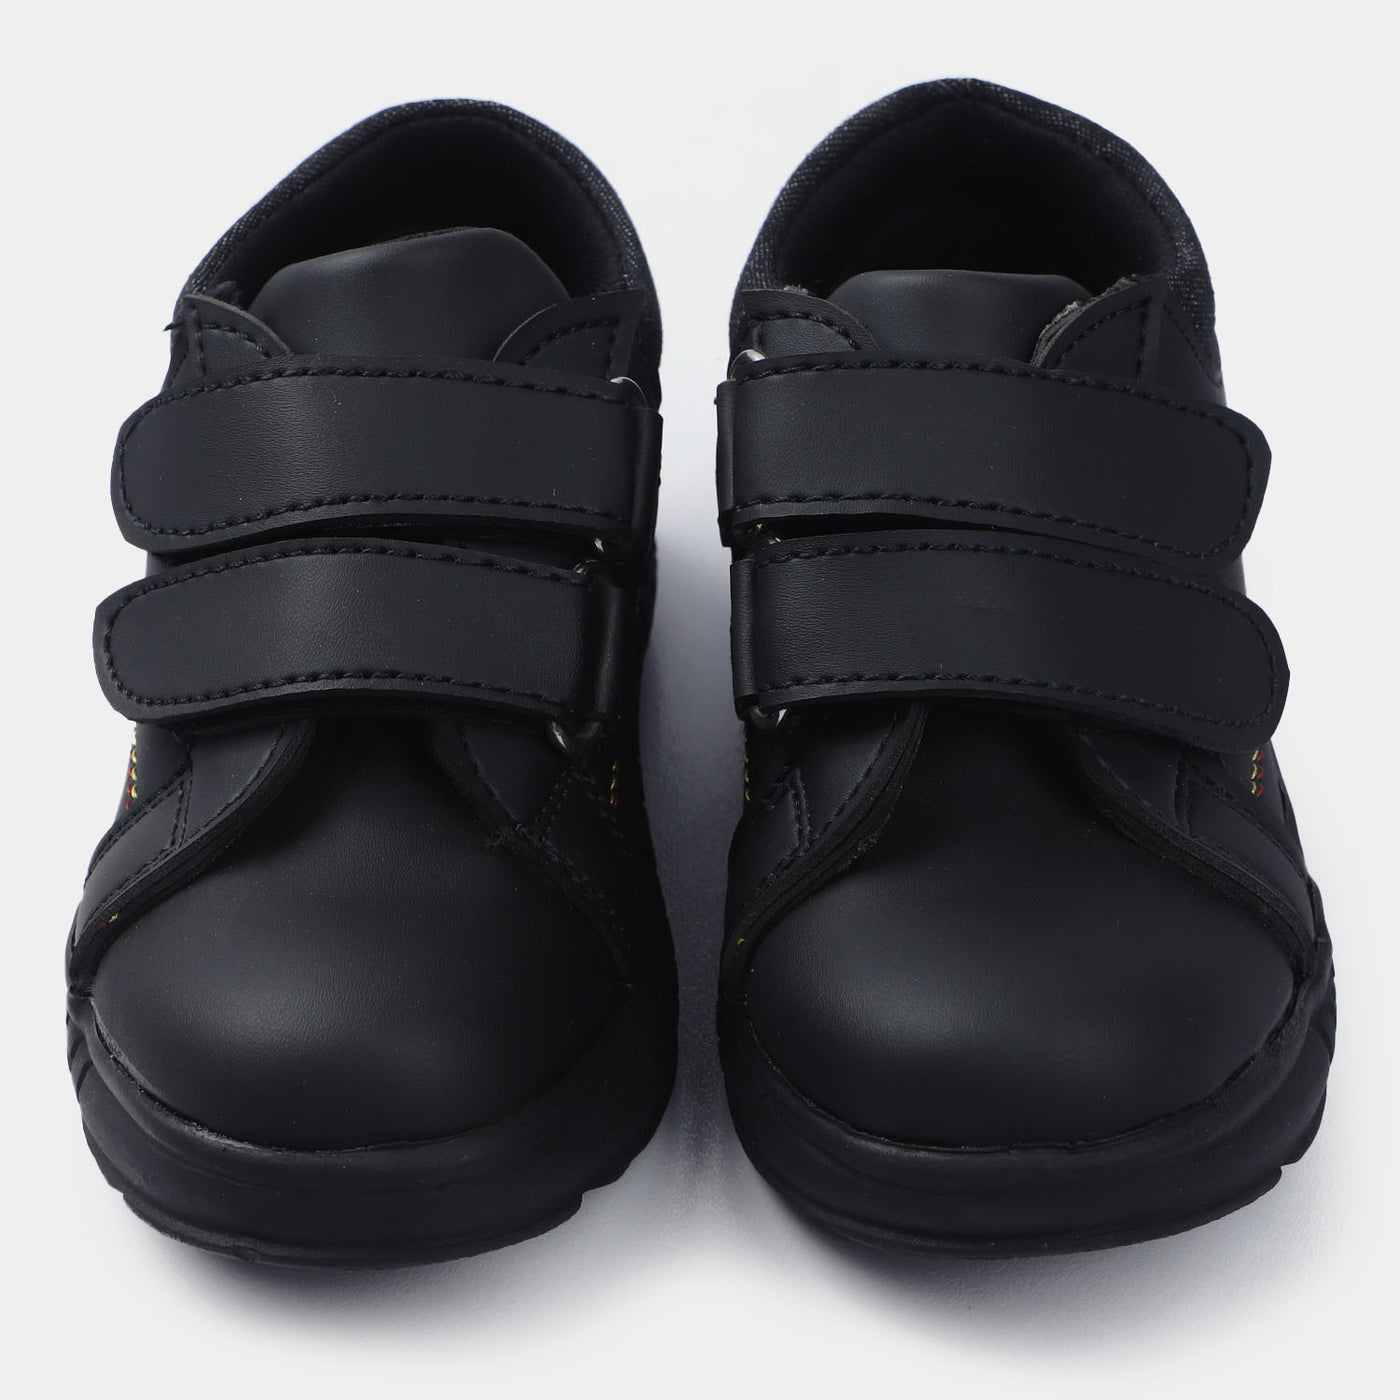 Boys Boots 2556-8-BLACK